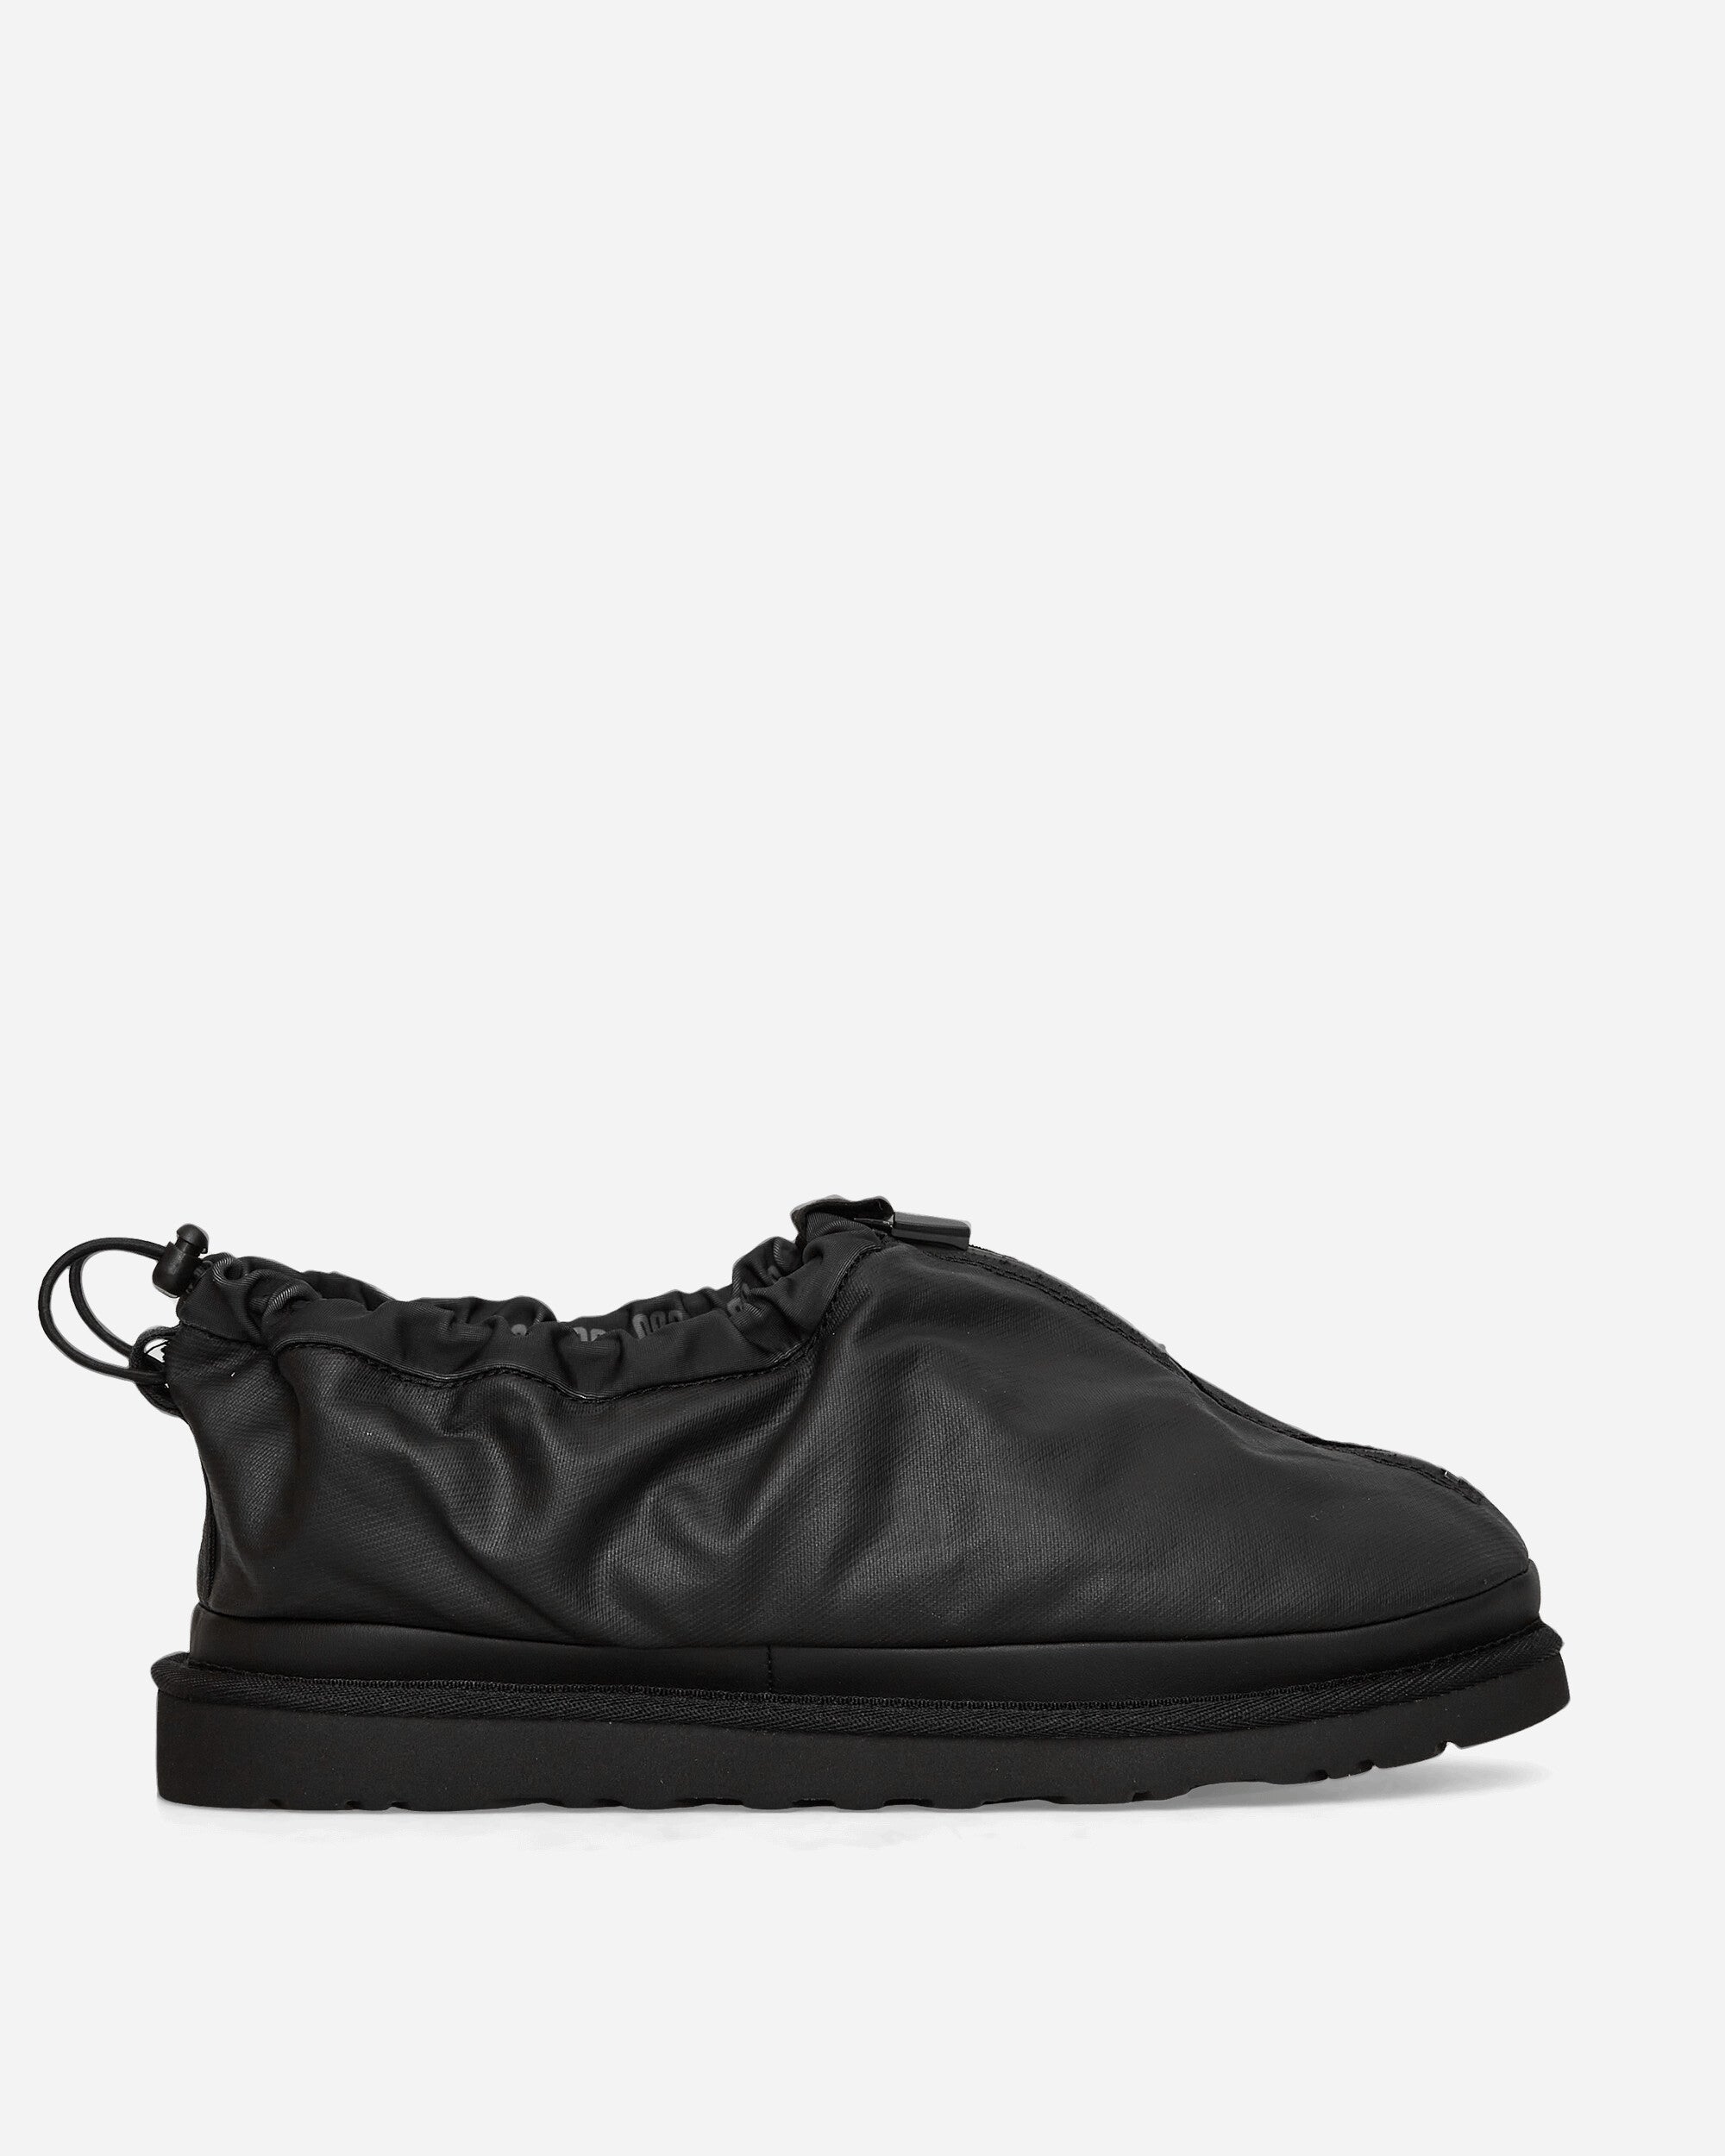 UGG M Tasman Shroud Zip Black Sandals and Slides Sandals and Mules 1144114 BLK